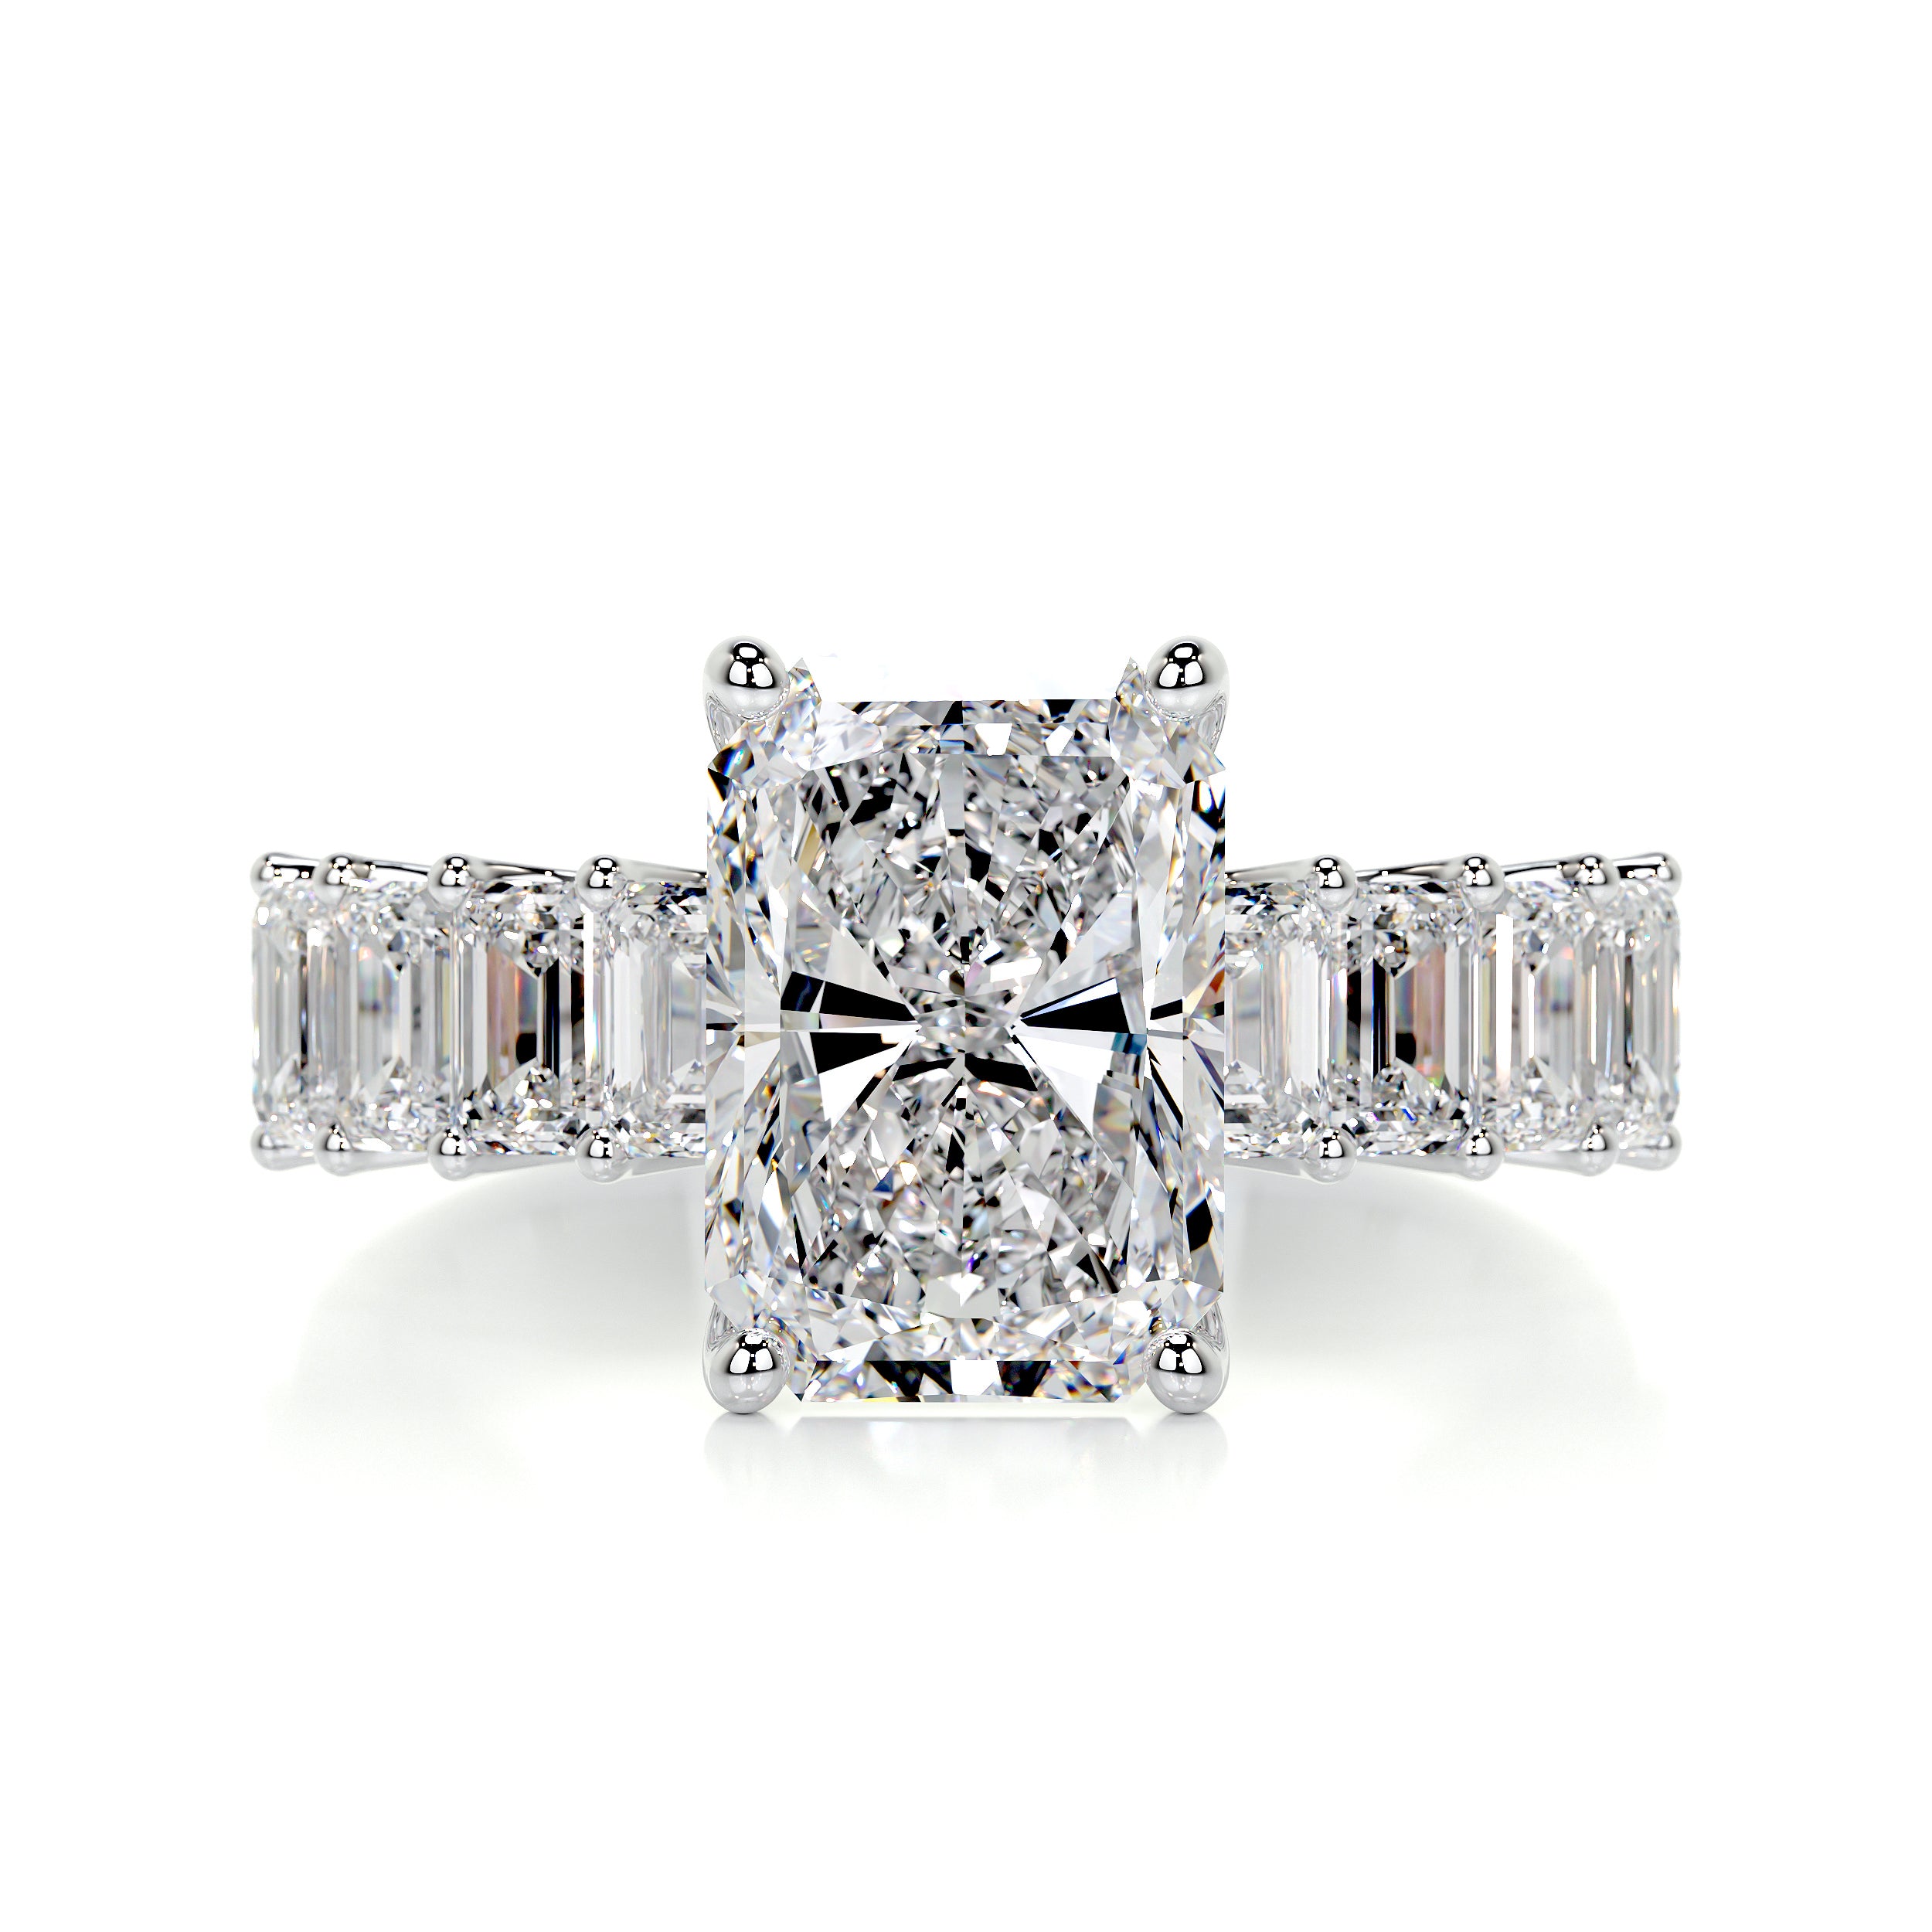 Arabella Diamond Engagement Ring   (5 Carat) -14K White Gold